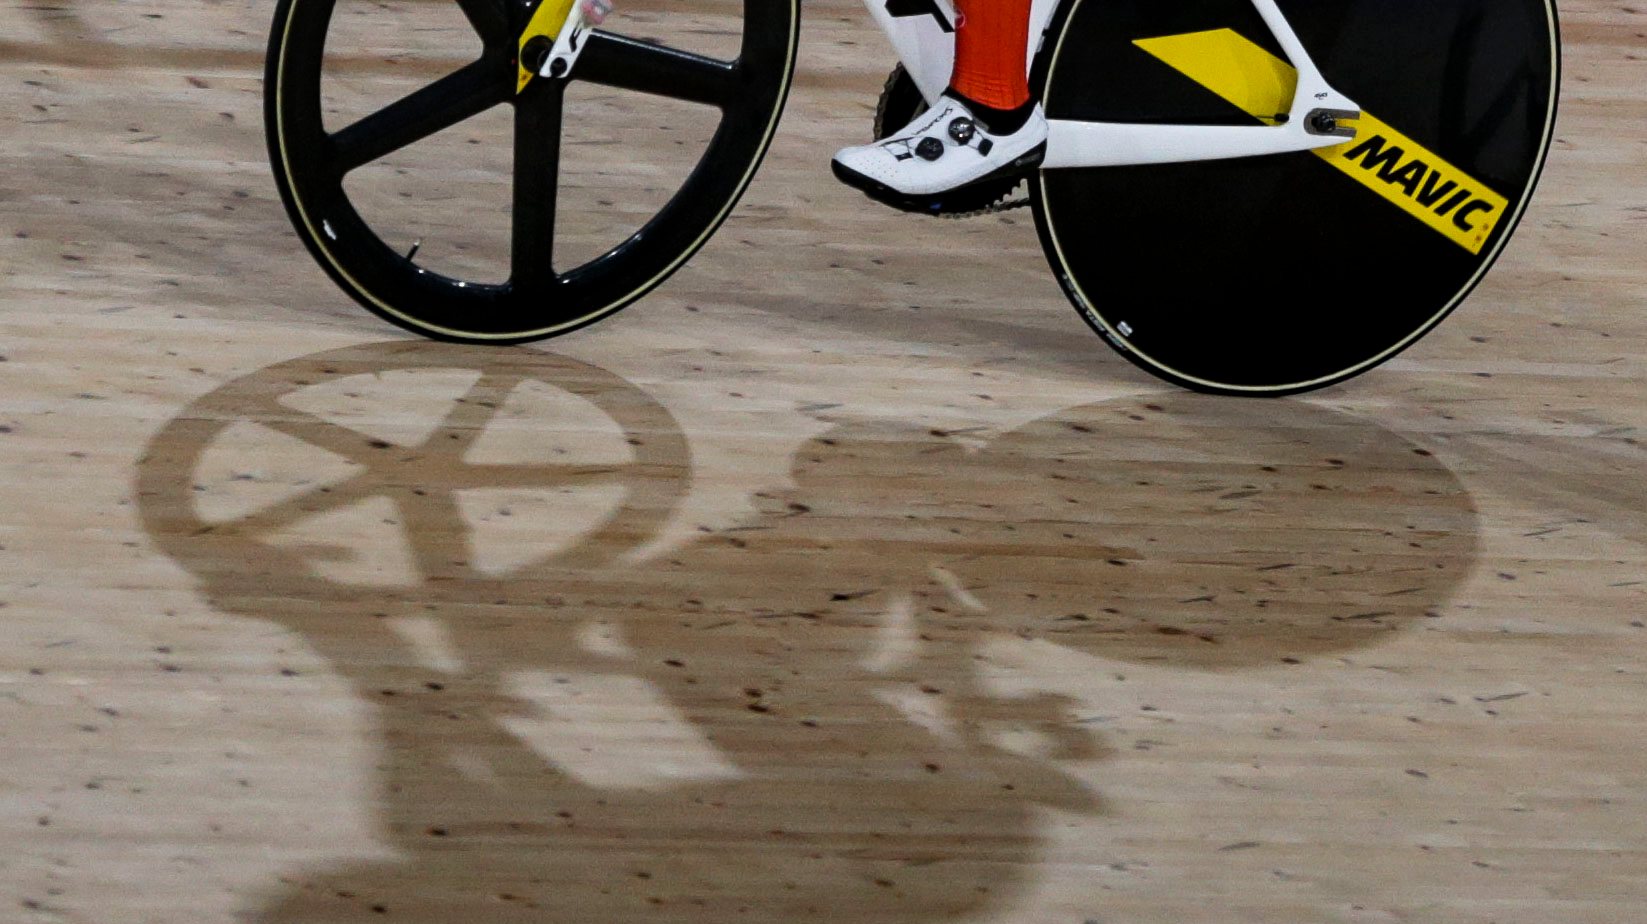 A ciclista portuguesa Maria Martins em ação durante uma das provas de Omnium do Ciclismo de Pista dos Jogos Olimpicos de Tóquio2020, no velodromo de Izu, 08 de agosto de 2021. TIAGO PETINGA/LUSA